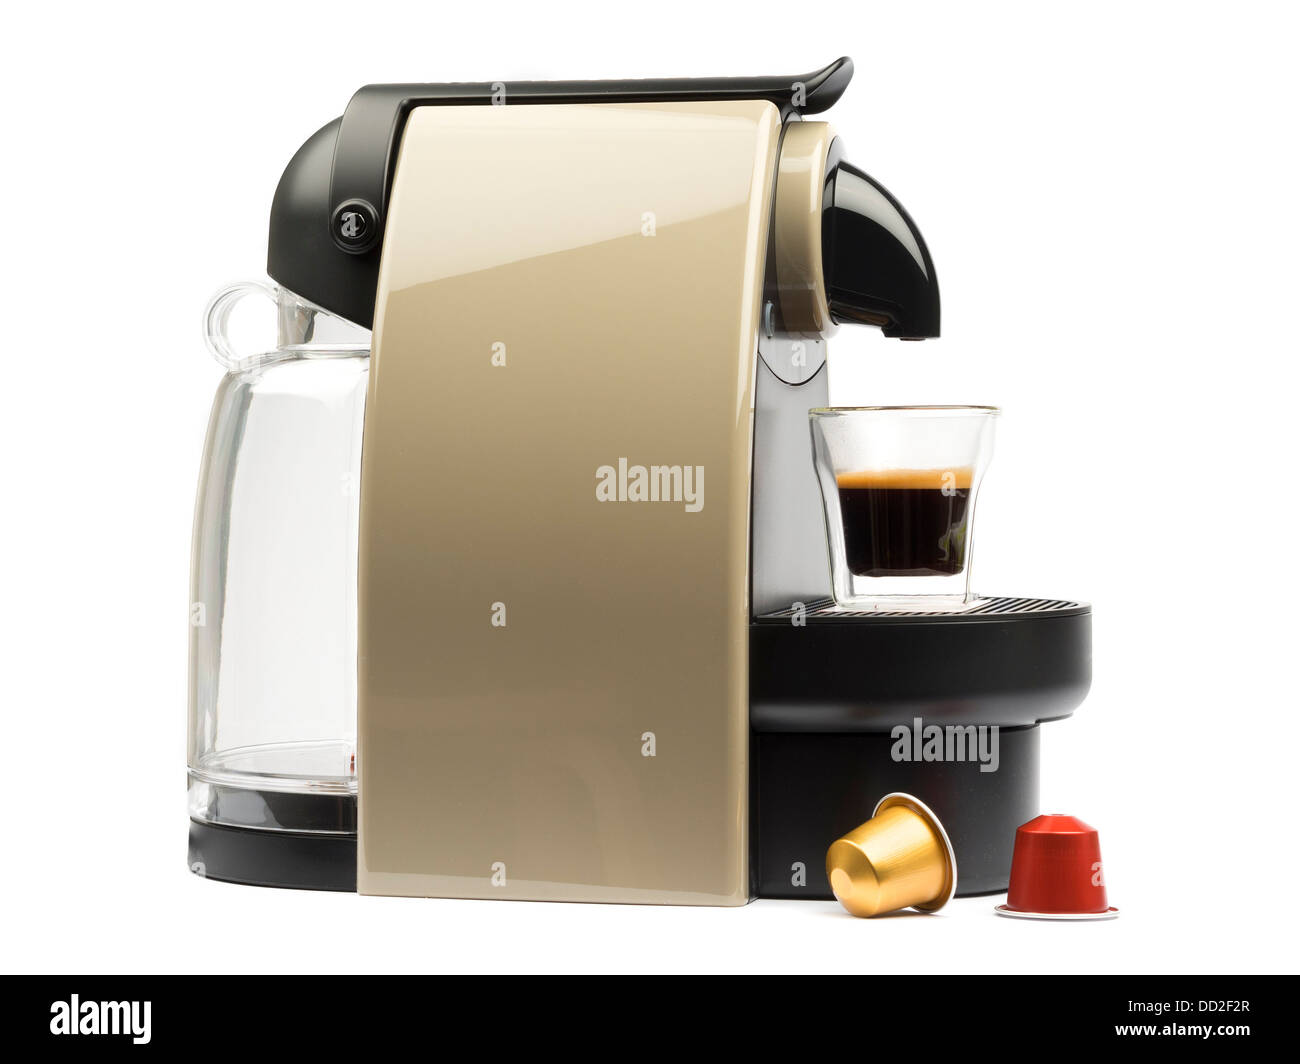 Máquina Nespresso Automática Para Crear Espresso Con Cápsulas De Aluminio.  Imagen editorial - Imagen de equipo, desayuno: 181154215